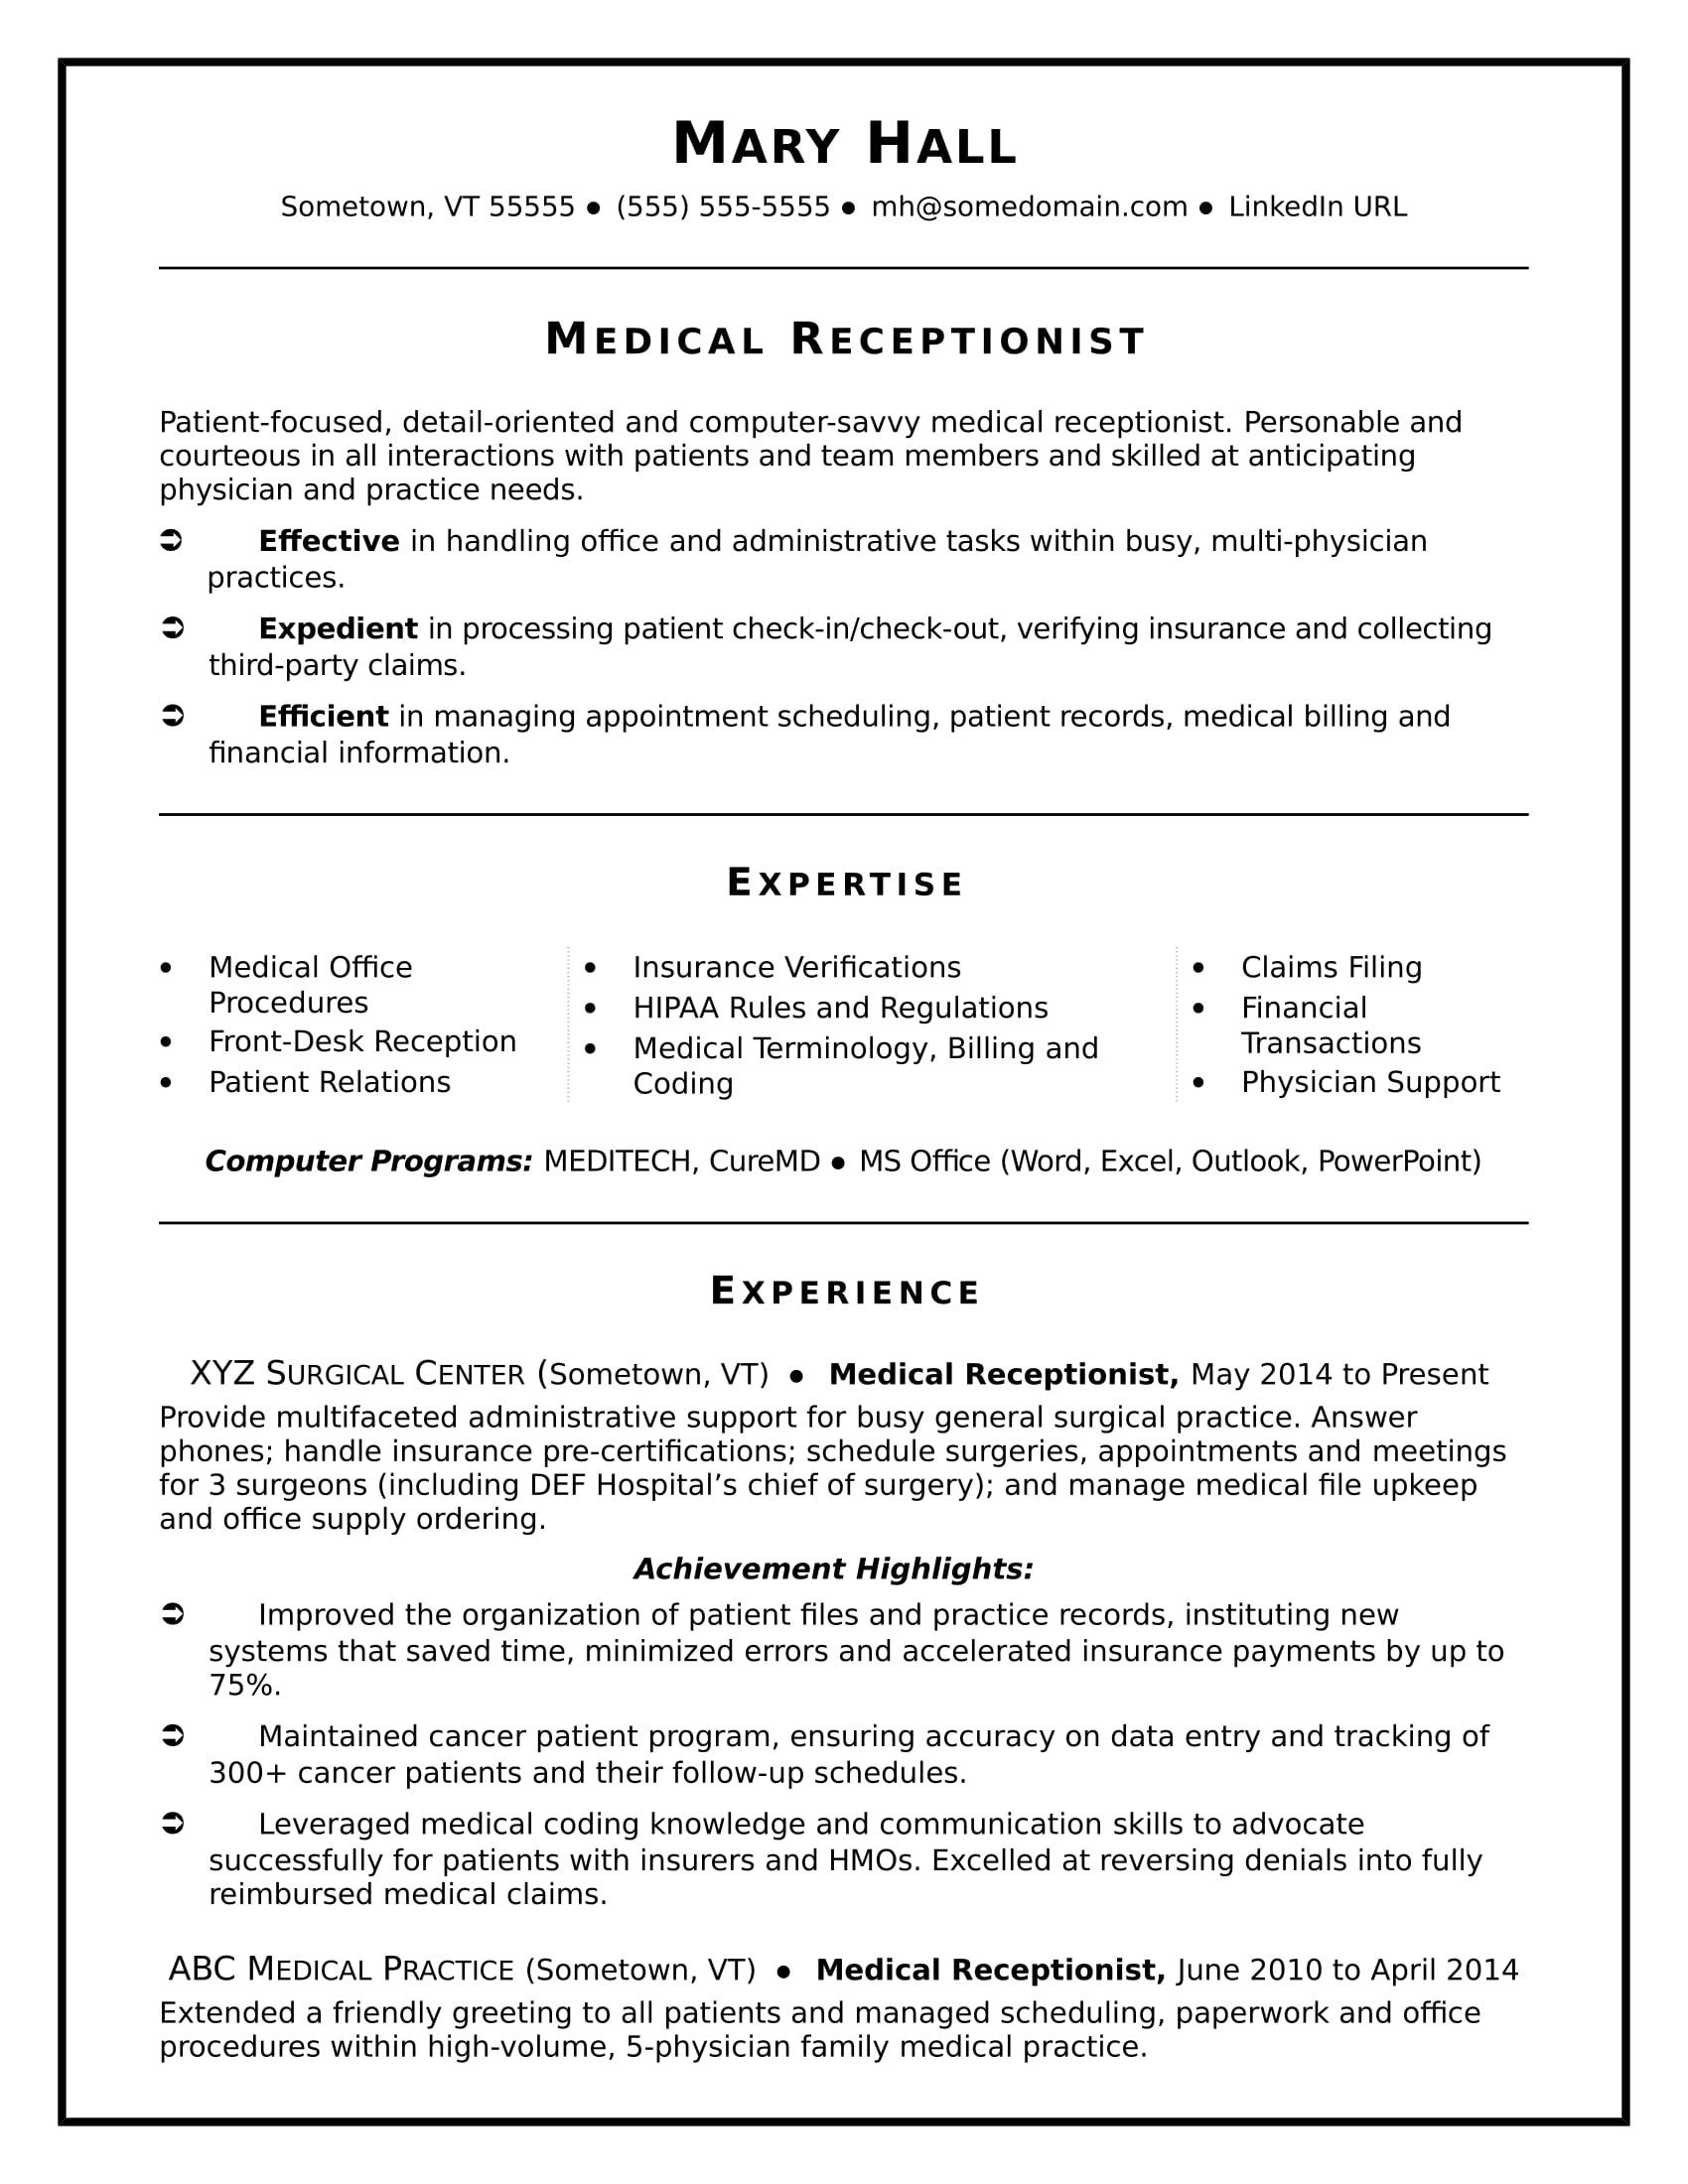 Medical assistant Back Office Resume Sample Medical Receptionist Resume Sample Monster.com